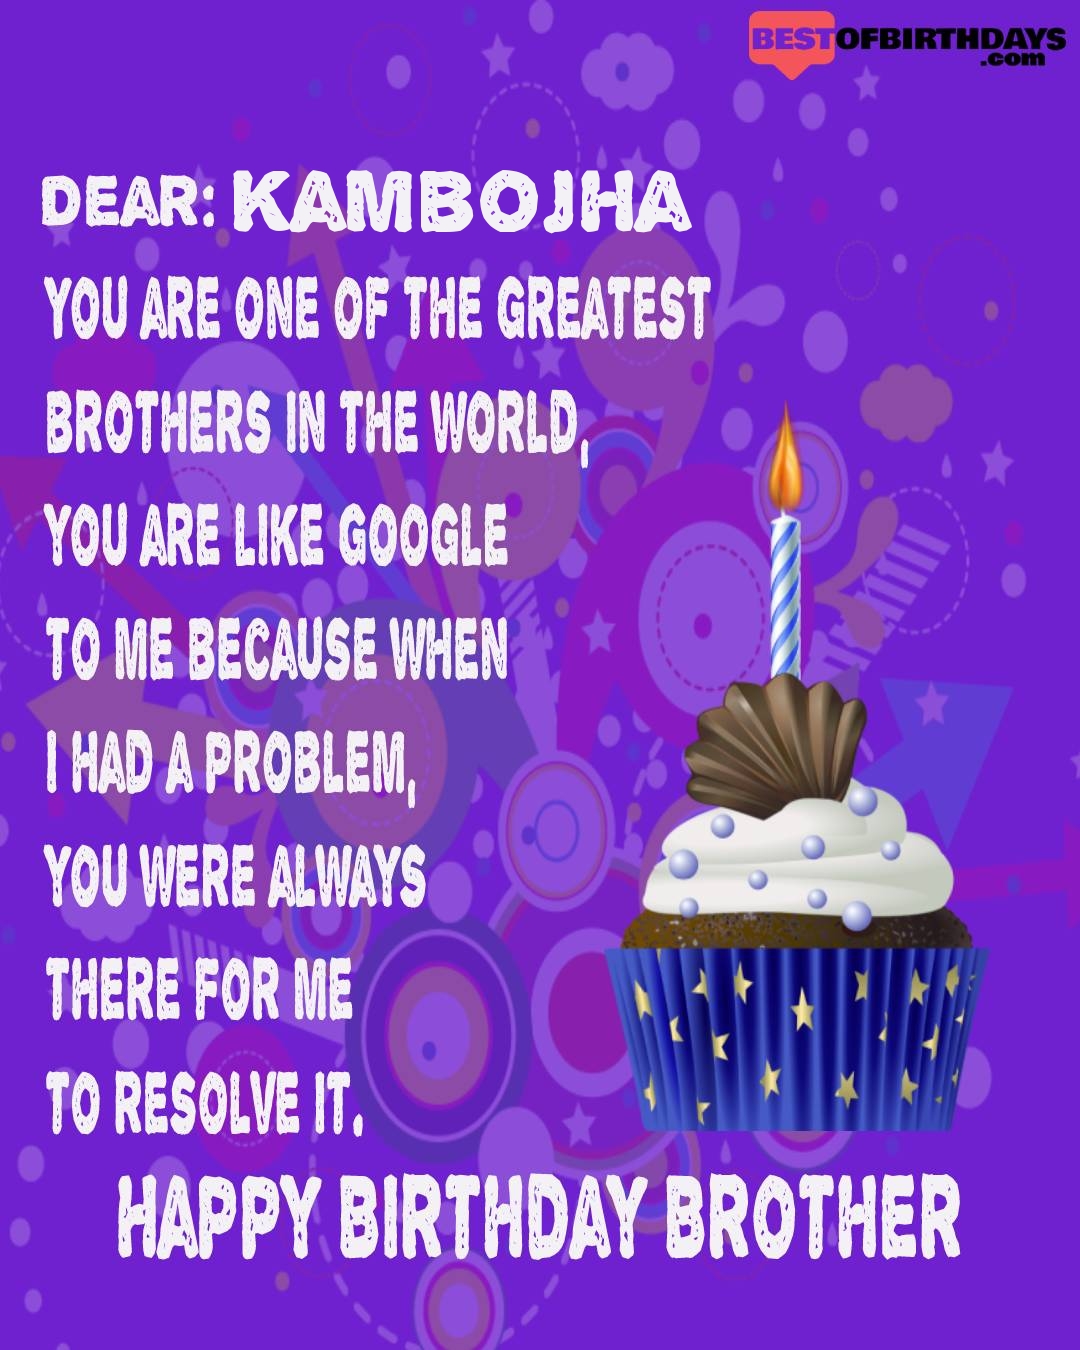 Happy birthday kambojha bhai brother bro